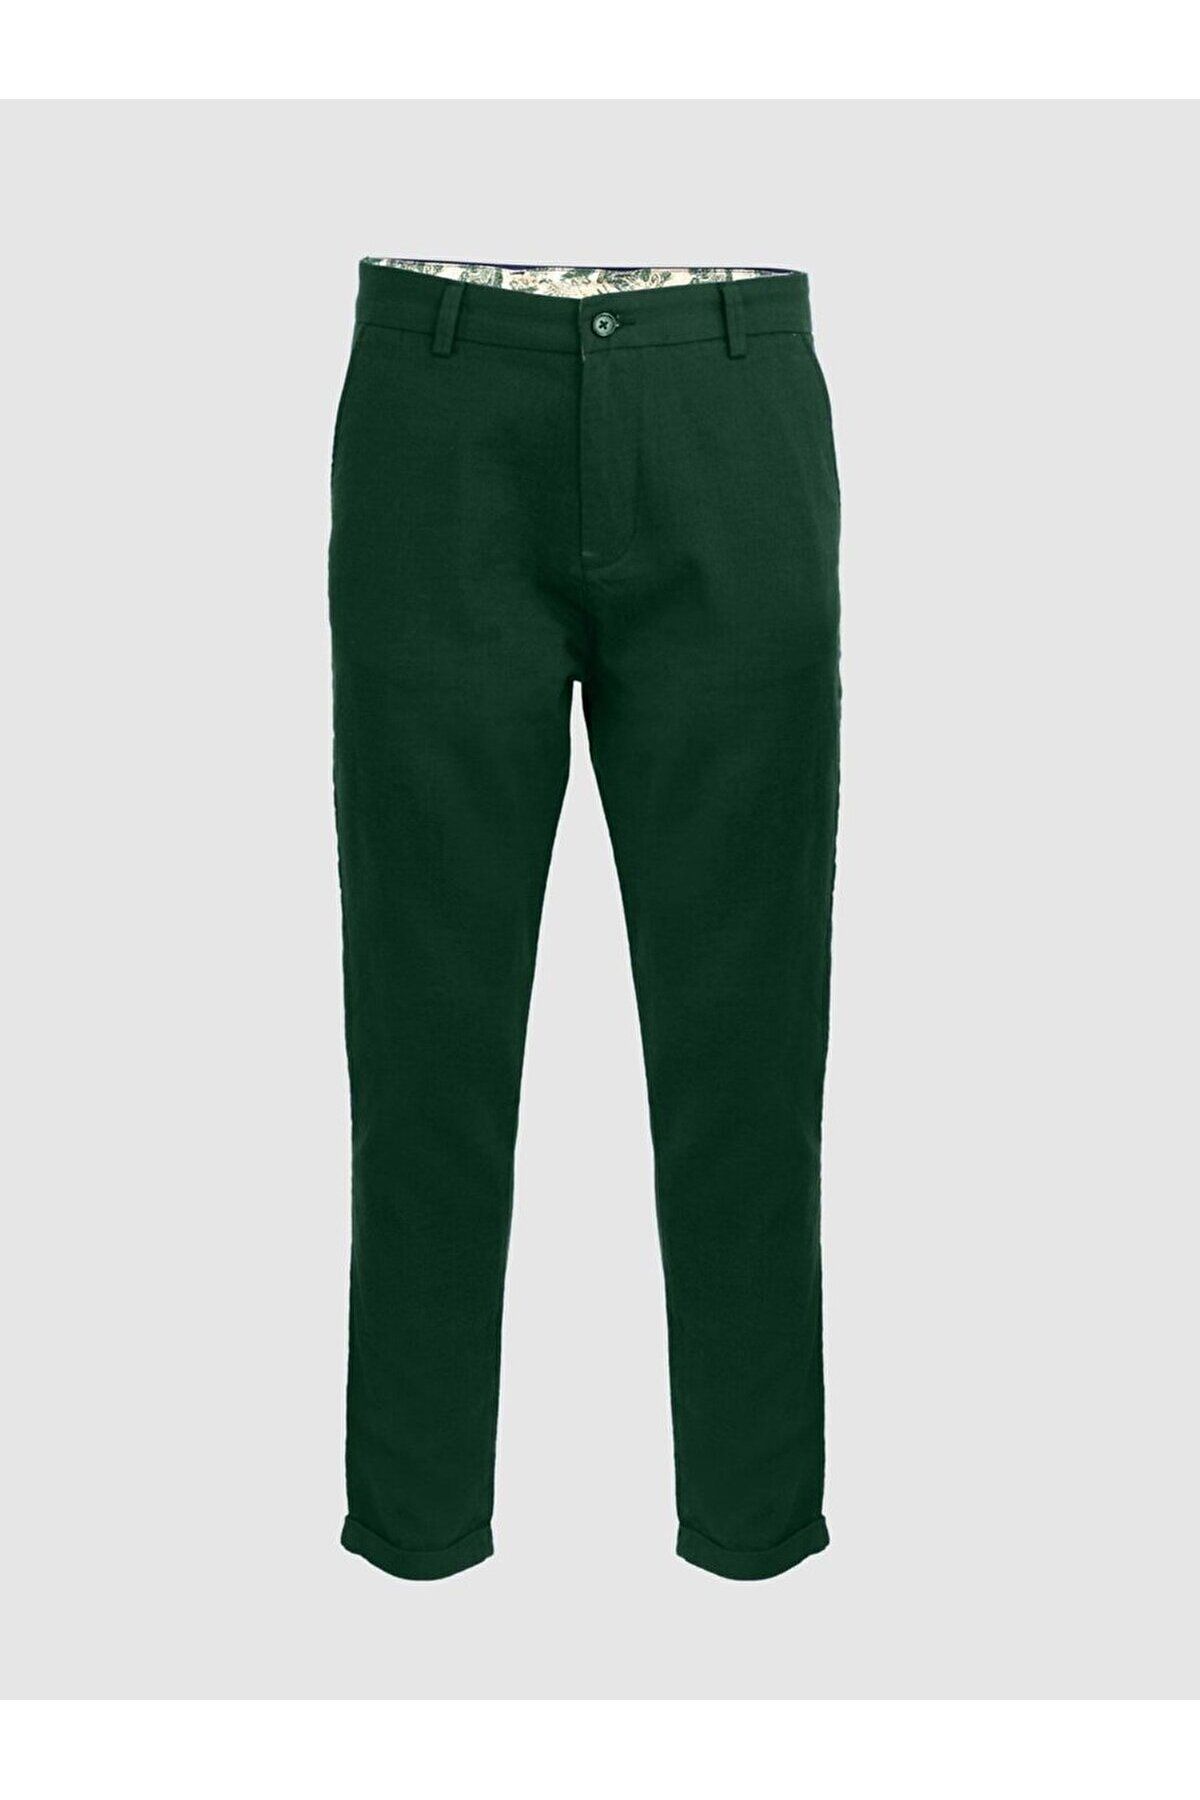 Ltb Keten Görünümlü Cepli Yeşil Pantolon